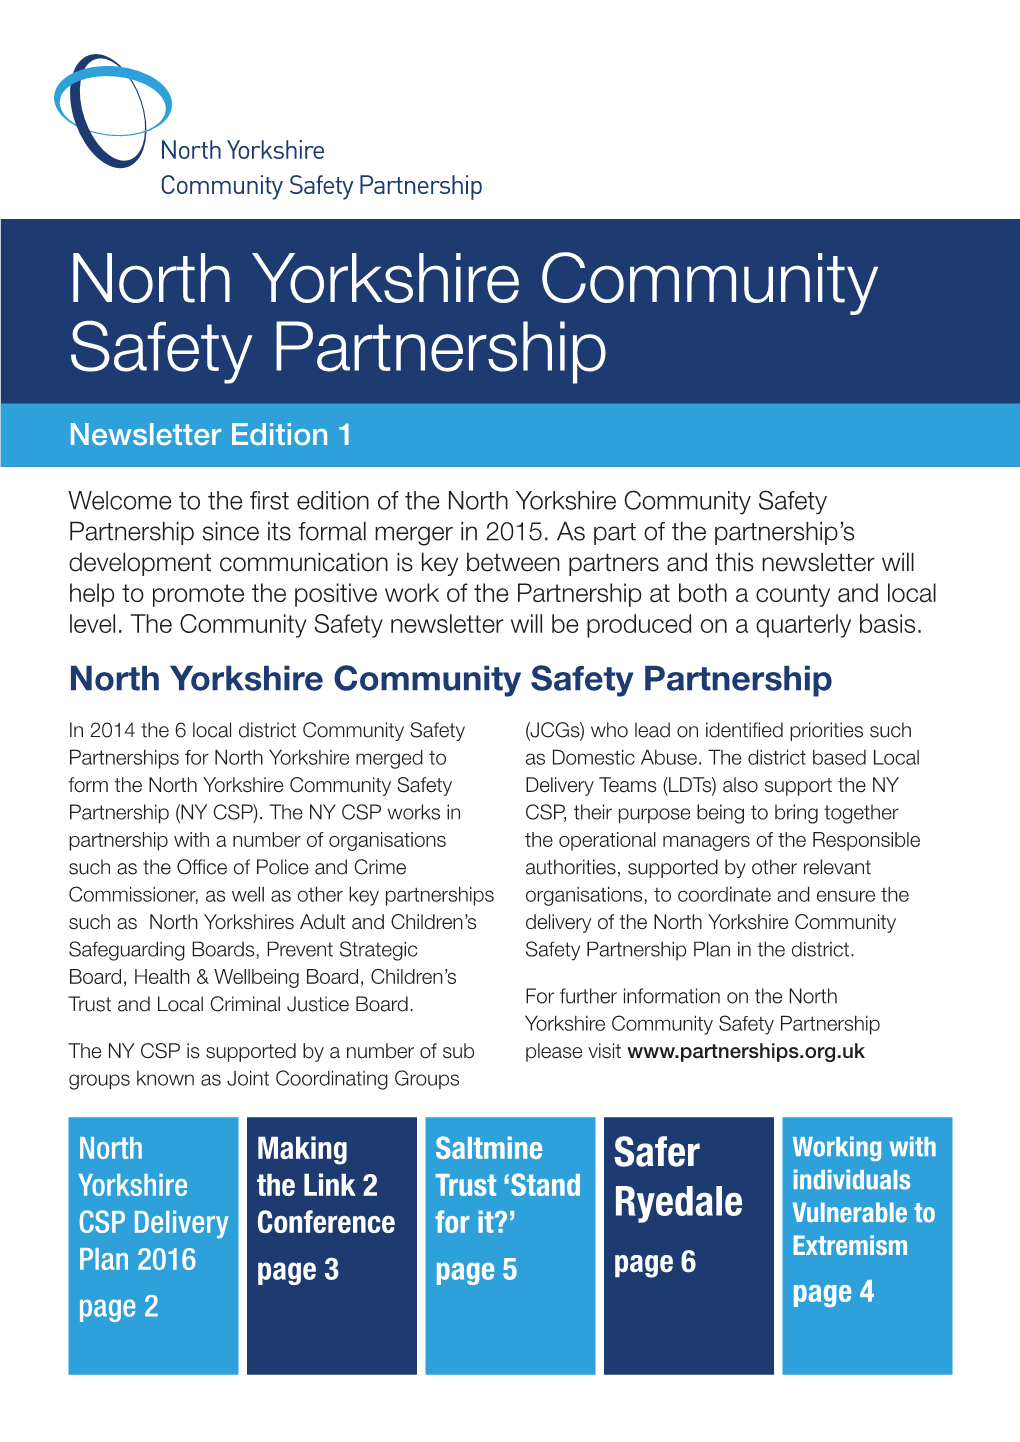 North Yorkshire Community Safety Partnership Newsletter